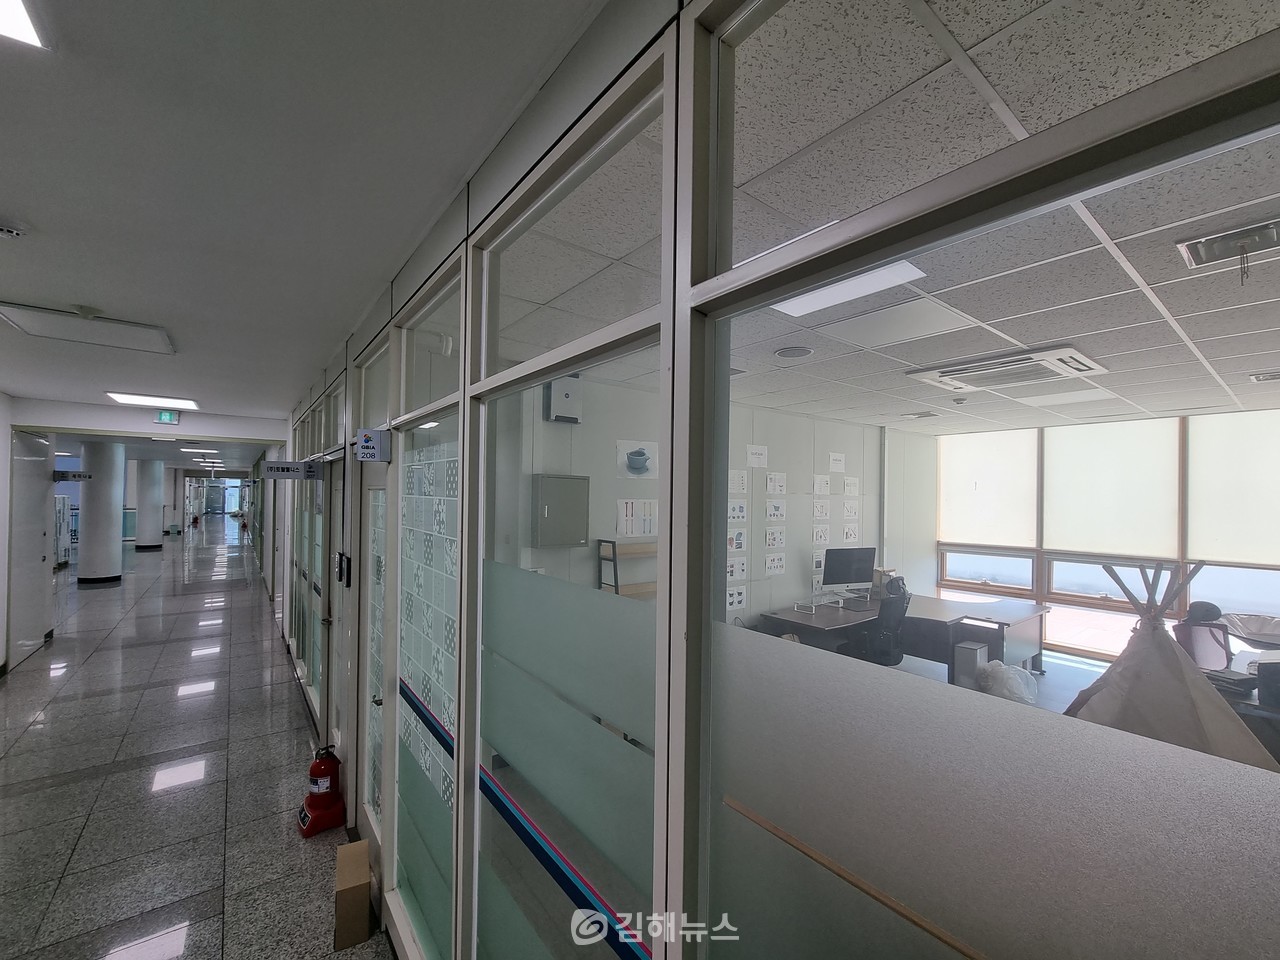 소셜빈의 본사였던 김해시 의생명센터 208호. 현재 직원은 없는 상태며 일부 집기만 덩그러니 남겨져 있다.  전형철 기자